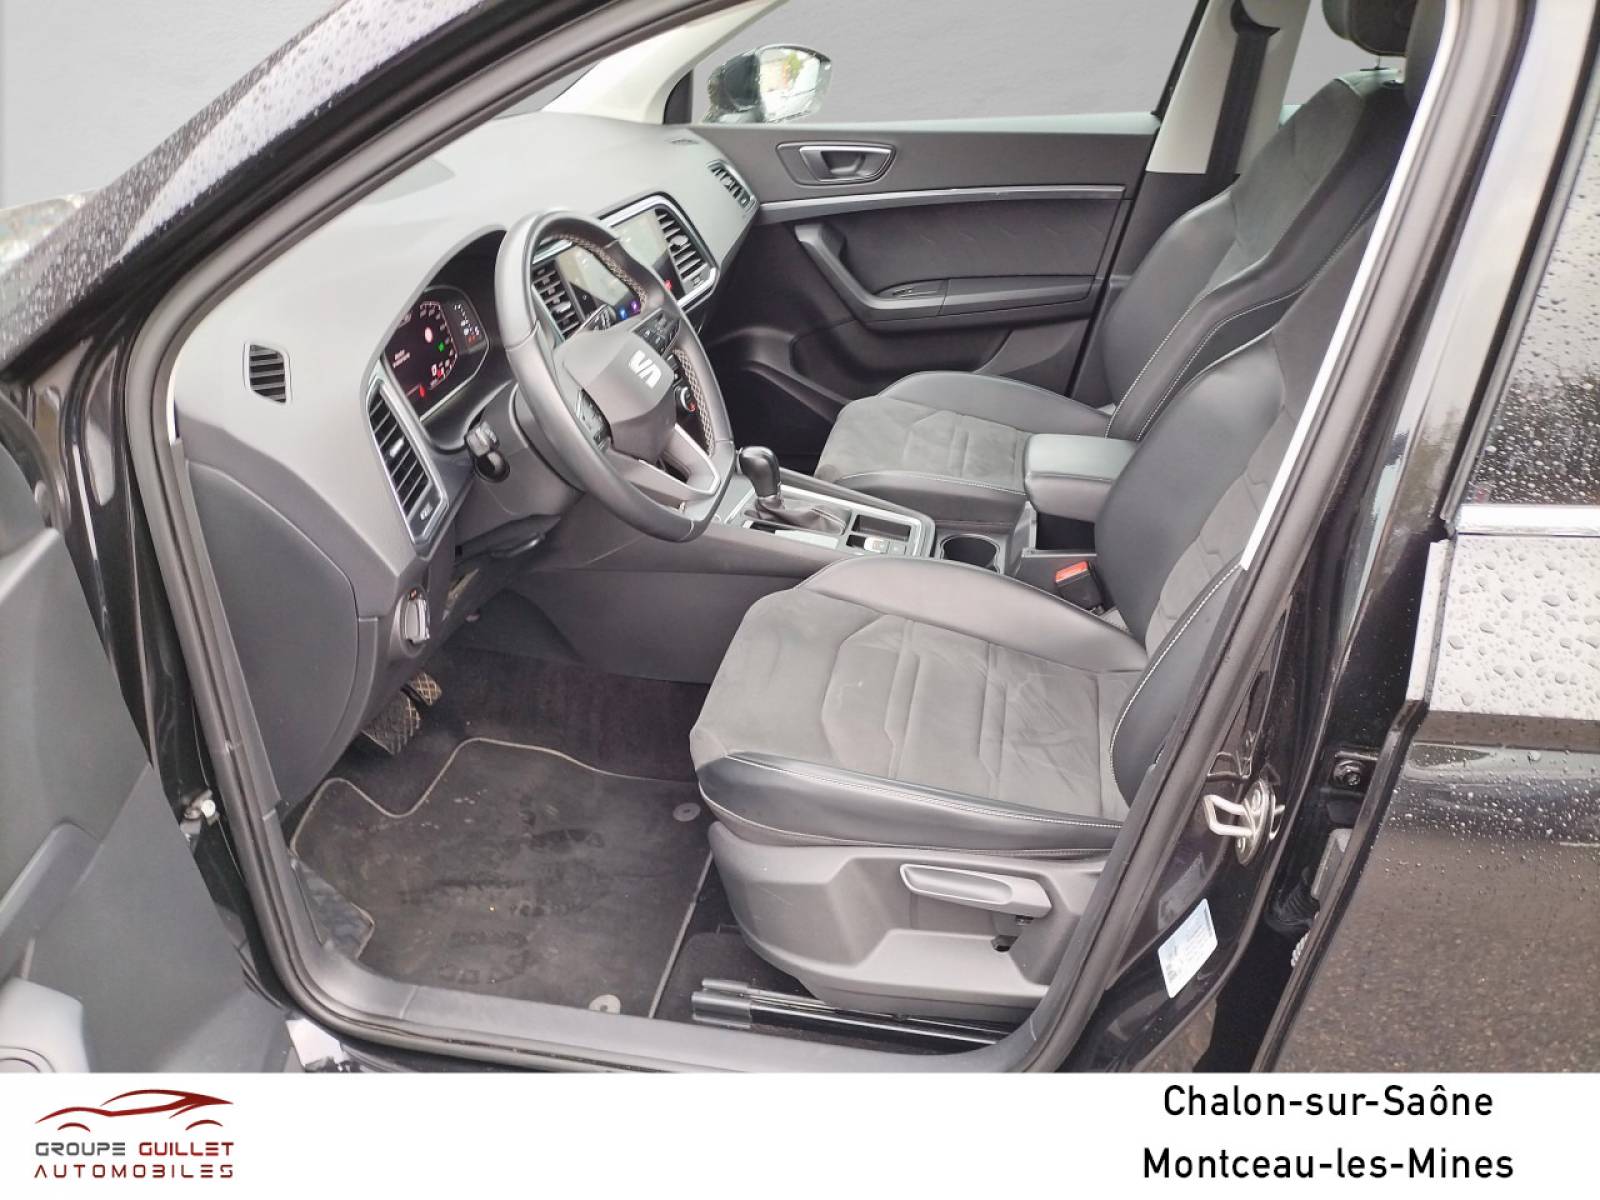 SEAT Ateca 2.0 TDI 150 ch Start/Stop DSG7 - véhicule d'occasion - Groupe Guillet - Zénith Motors Hyundai Montceau - 71300 - Montceau-les-Mines - 9